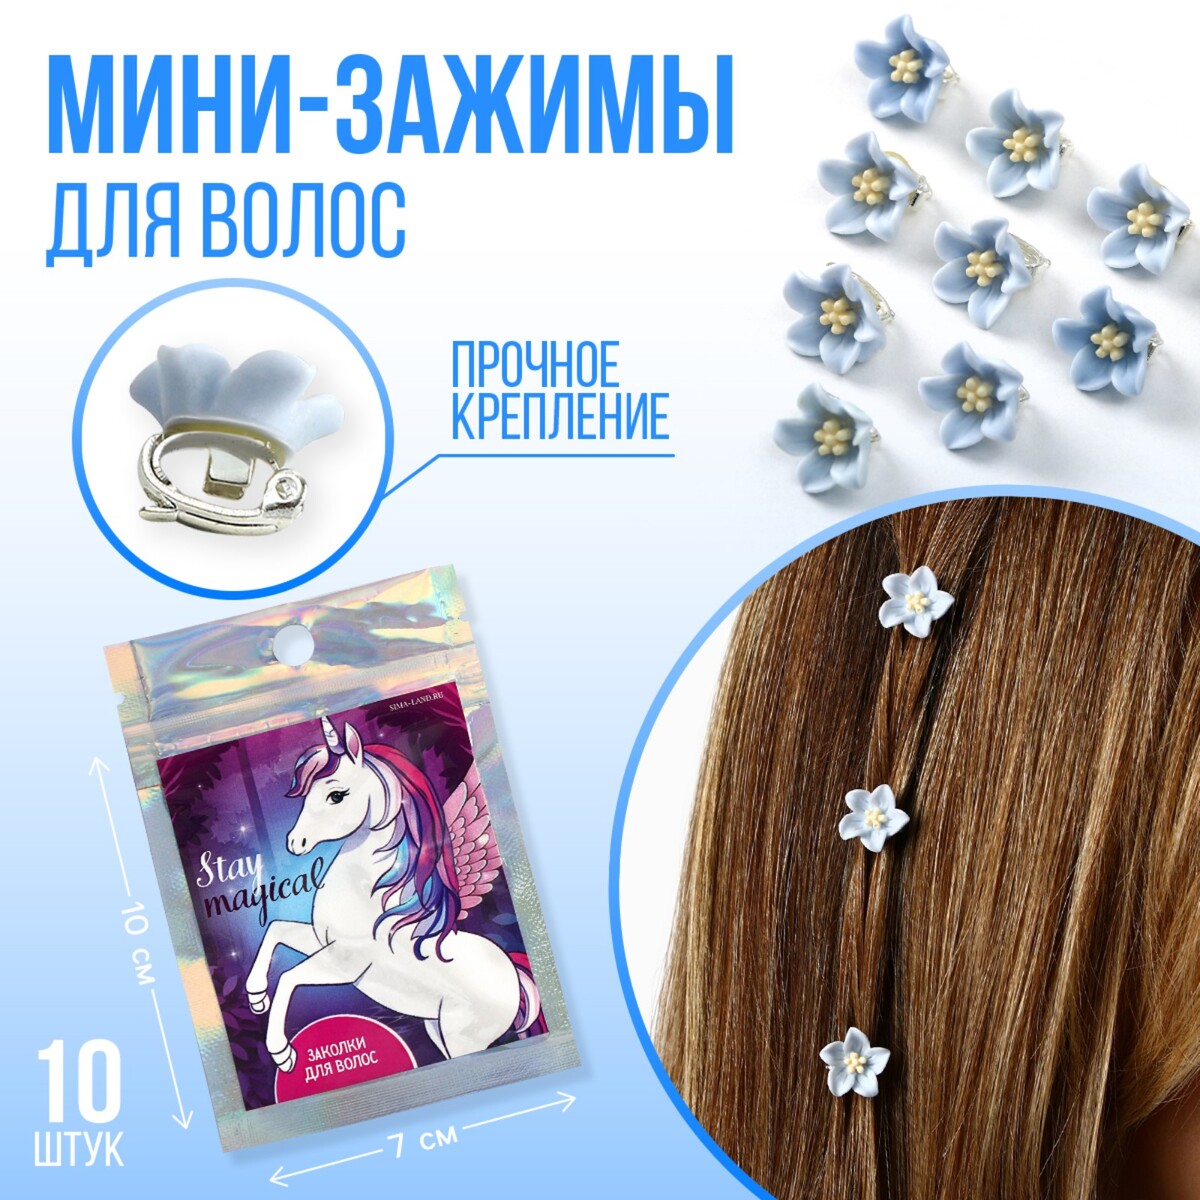 Набор мини-зажимов для украшения волос stay magical, 10 шт., 1.3 х 1.3 х 1.5 см лак для волос густые и блестящие